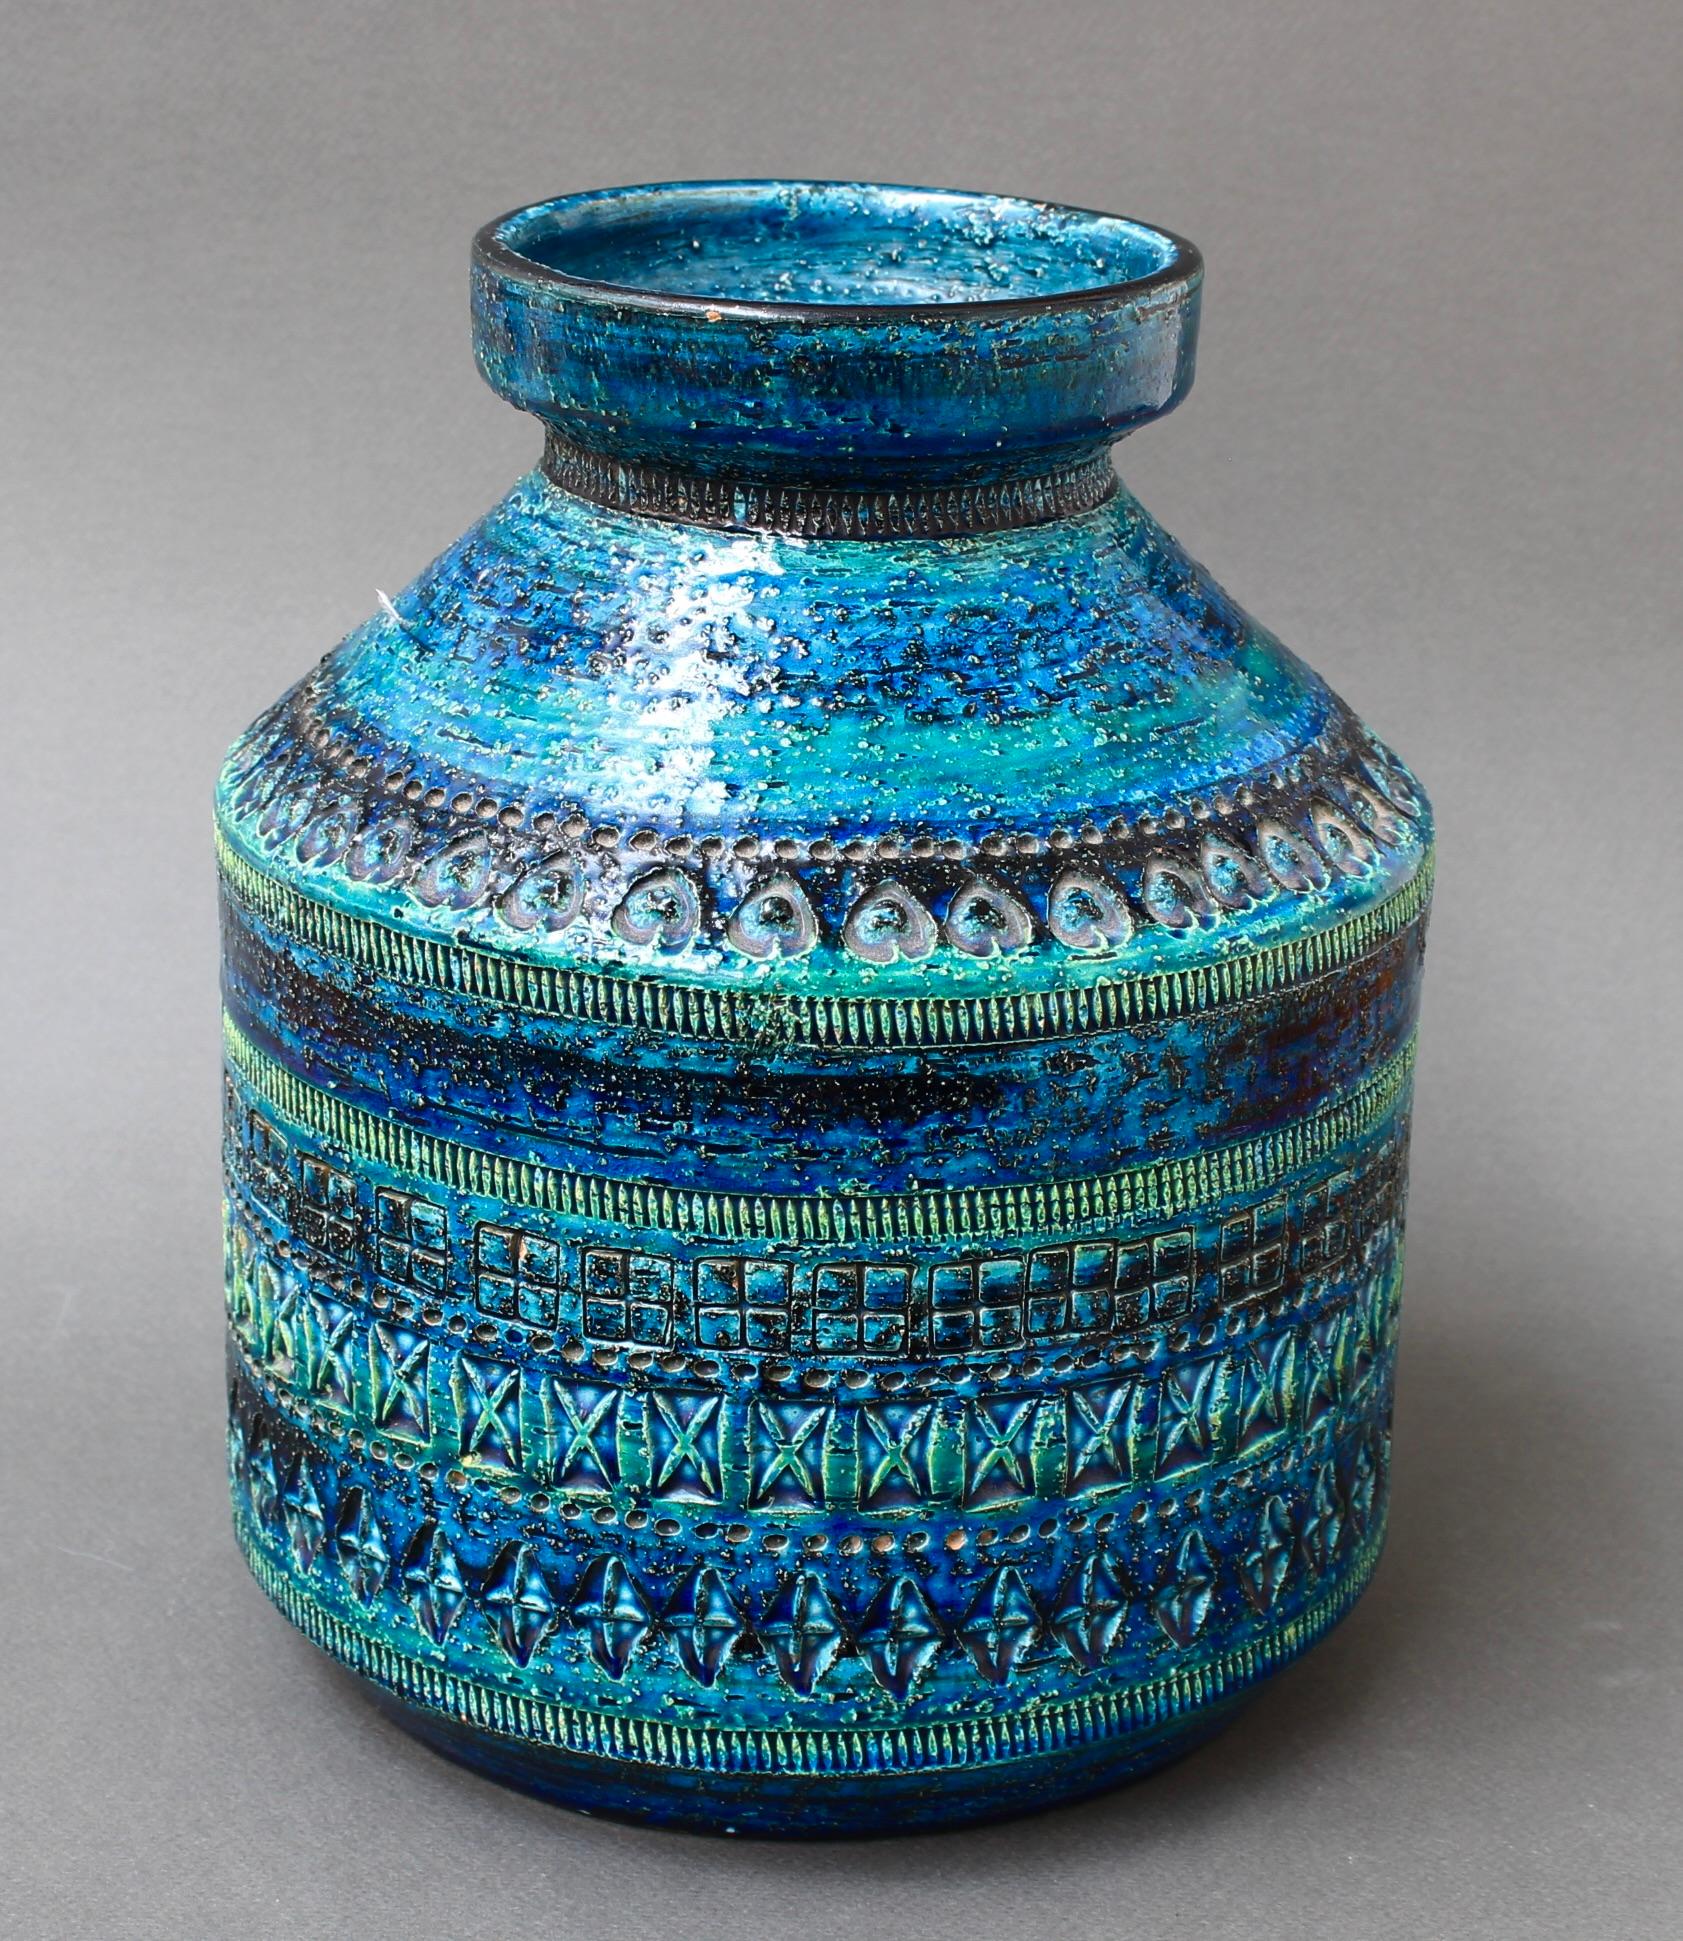 Vase vintage en céramique italienne en CIRCA avec motif géométrique par Aldo Londi pour Bitossi (circa 1960). Rimini Blu a été conçu par Aldo Londi en 1959 et est rapidement devenu la gamme emblématique de l'entreprise. Il a été appliqué à un large